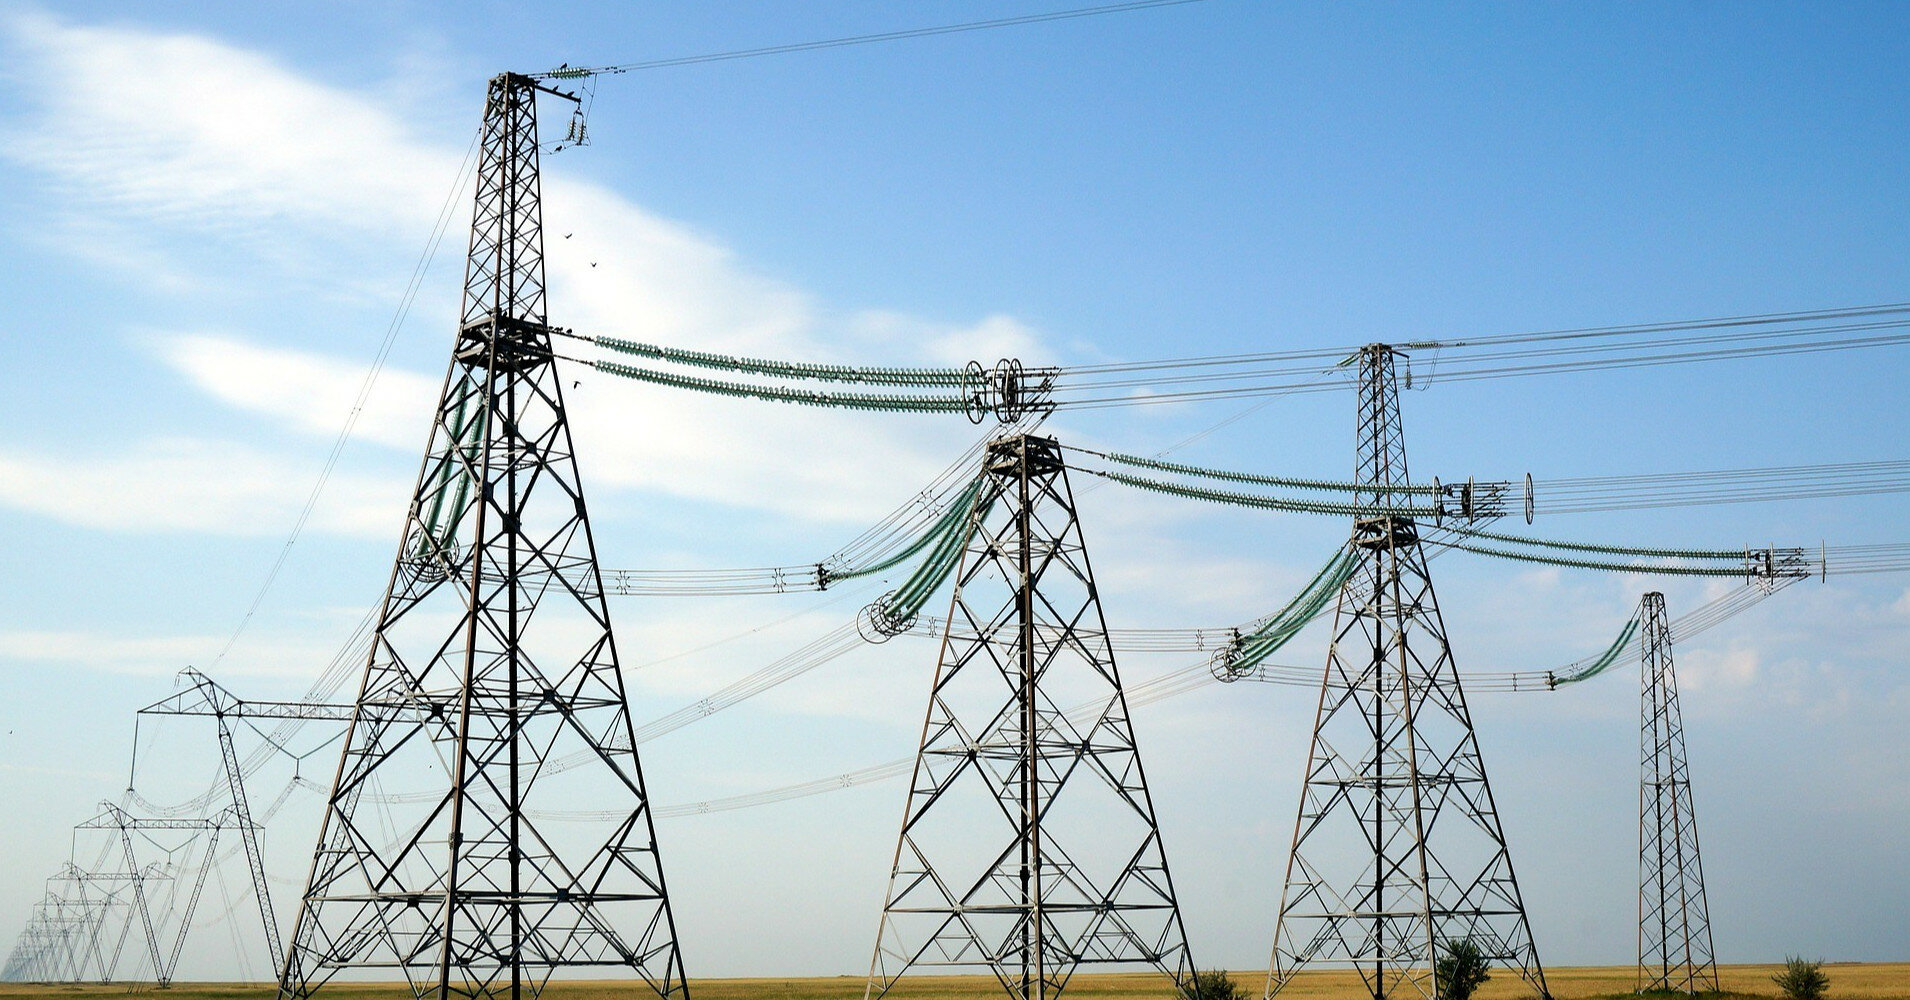 Укрэнерго: Дефицит в энергосистеме есть, все области получили лимиты